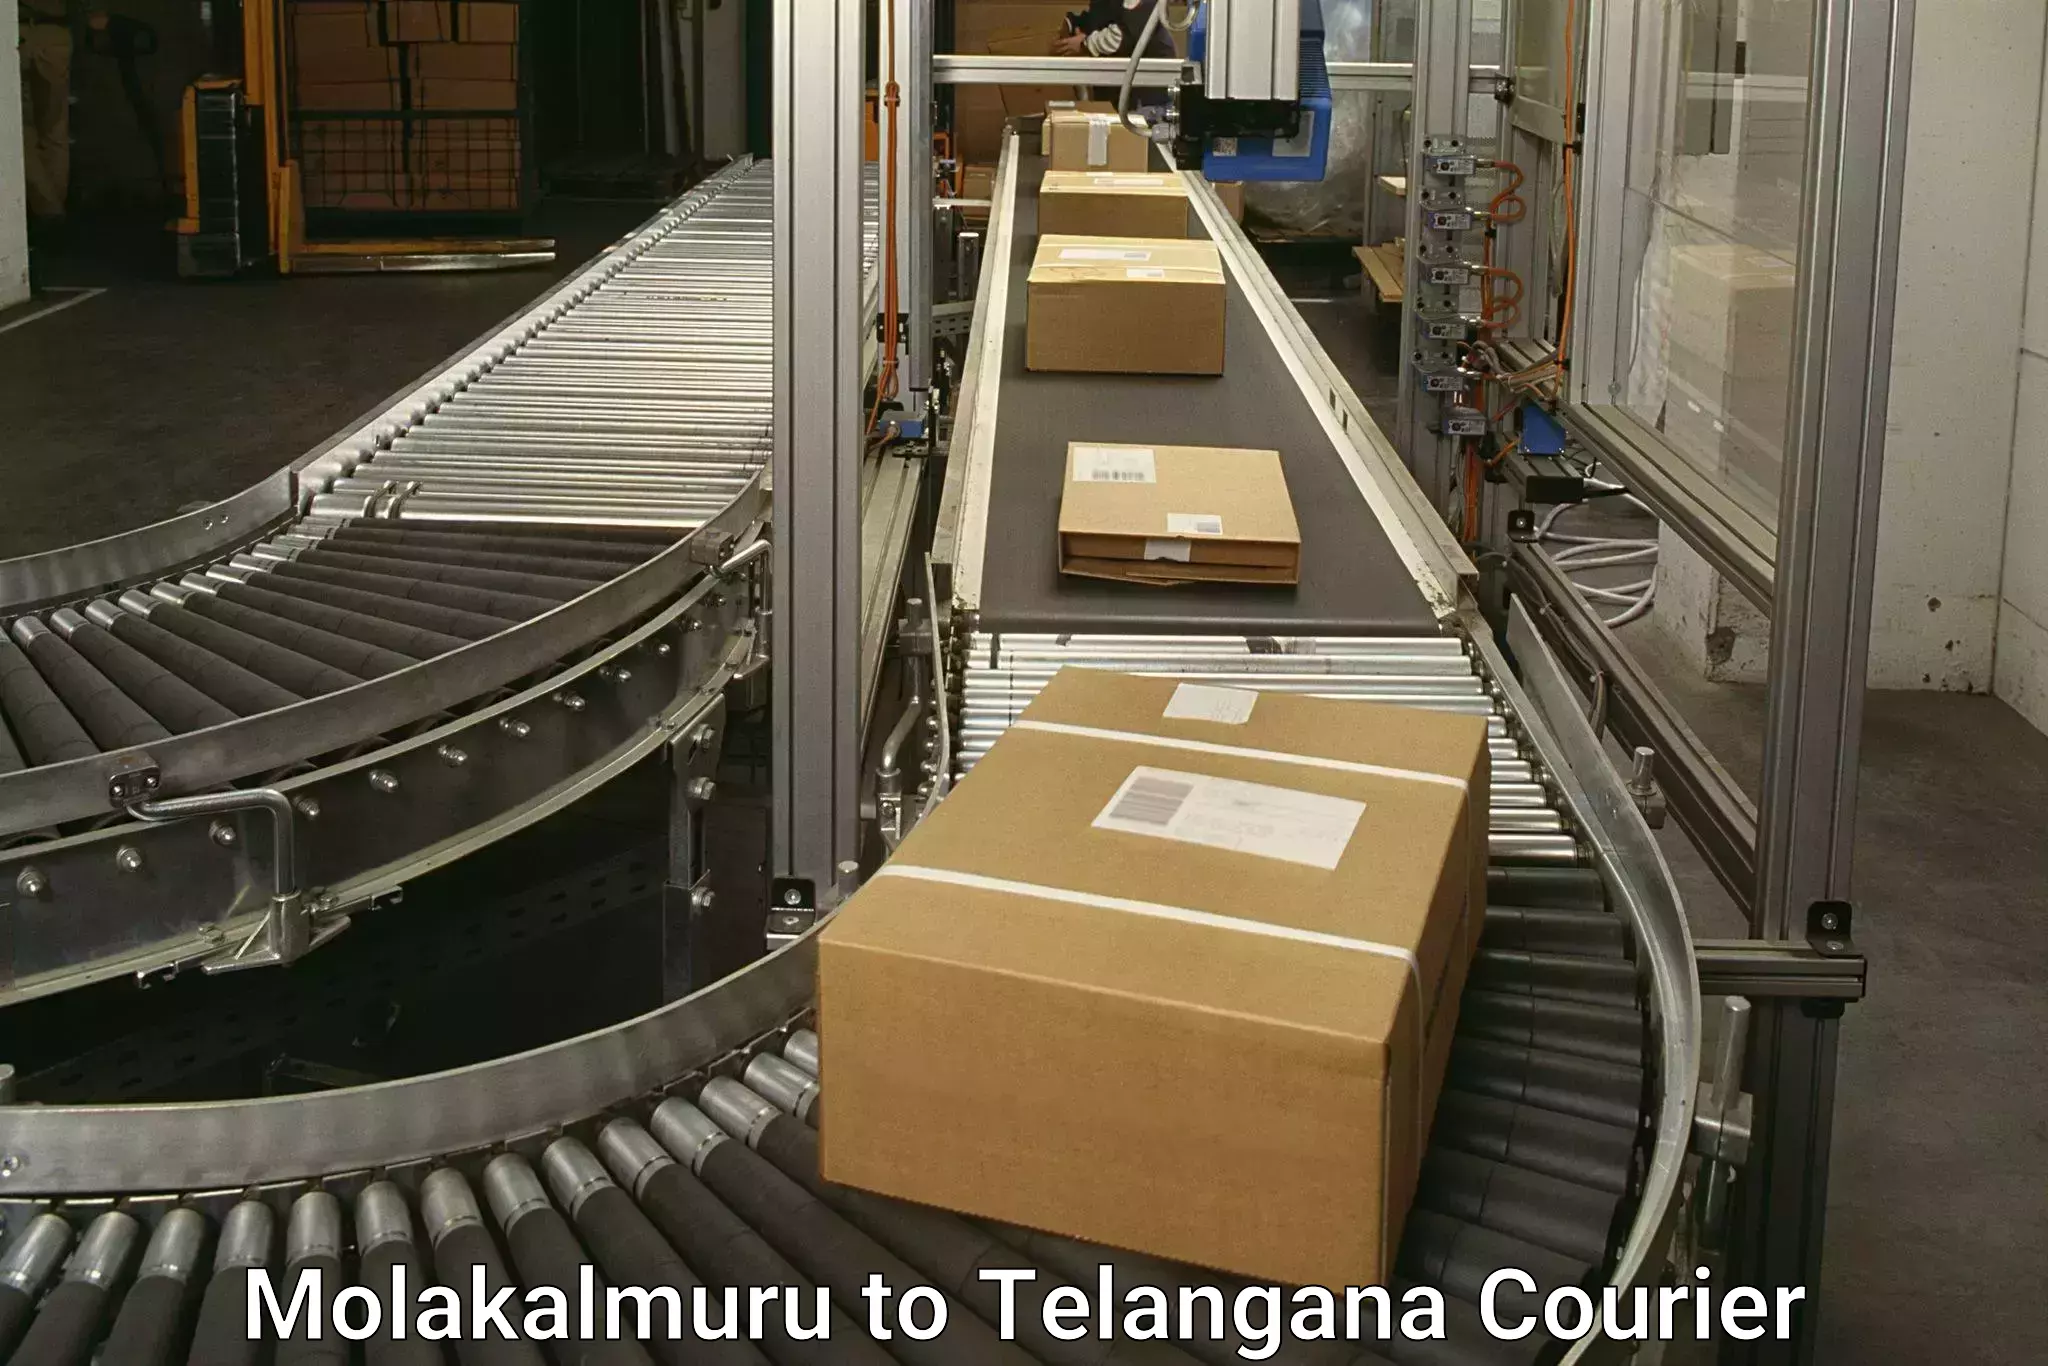 Business delivery service Molakalmuru to Utnoor